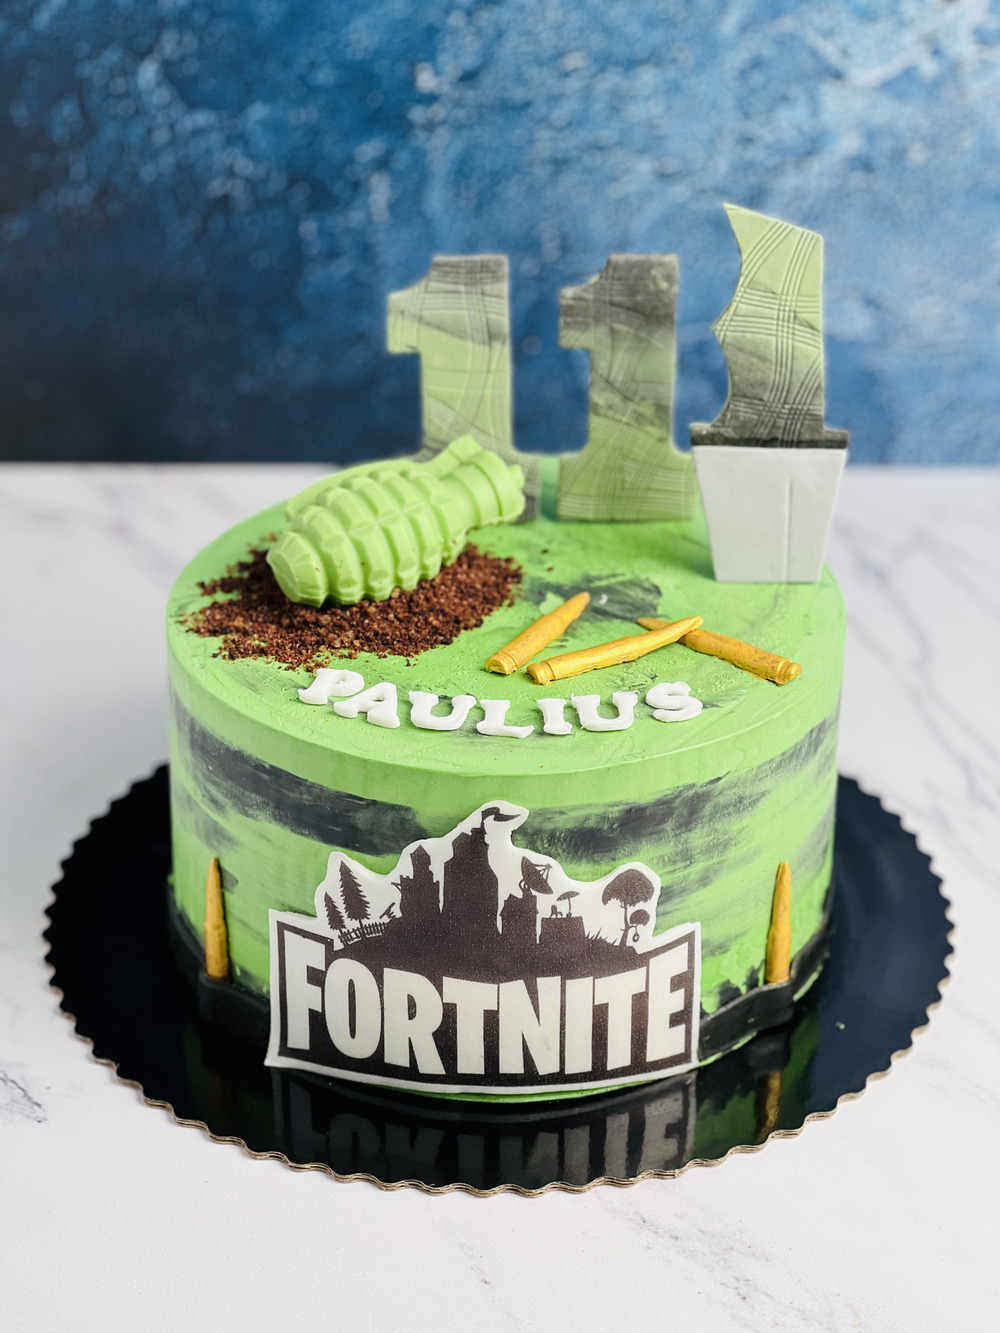 Fortnite tortas